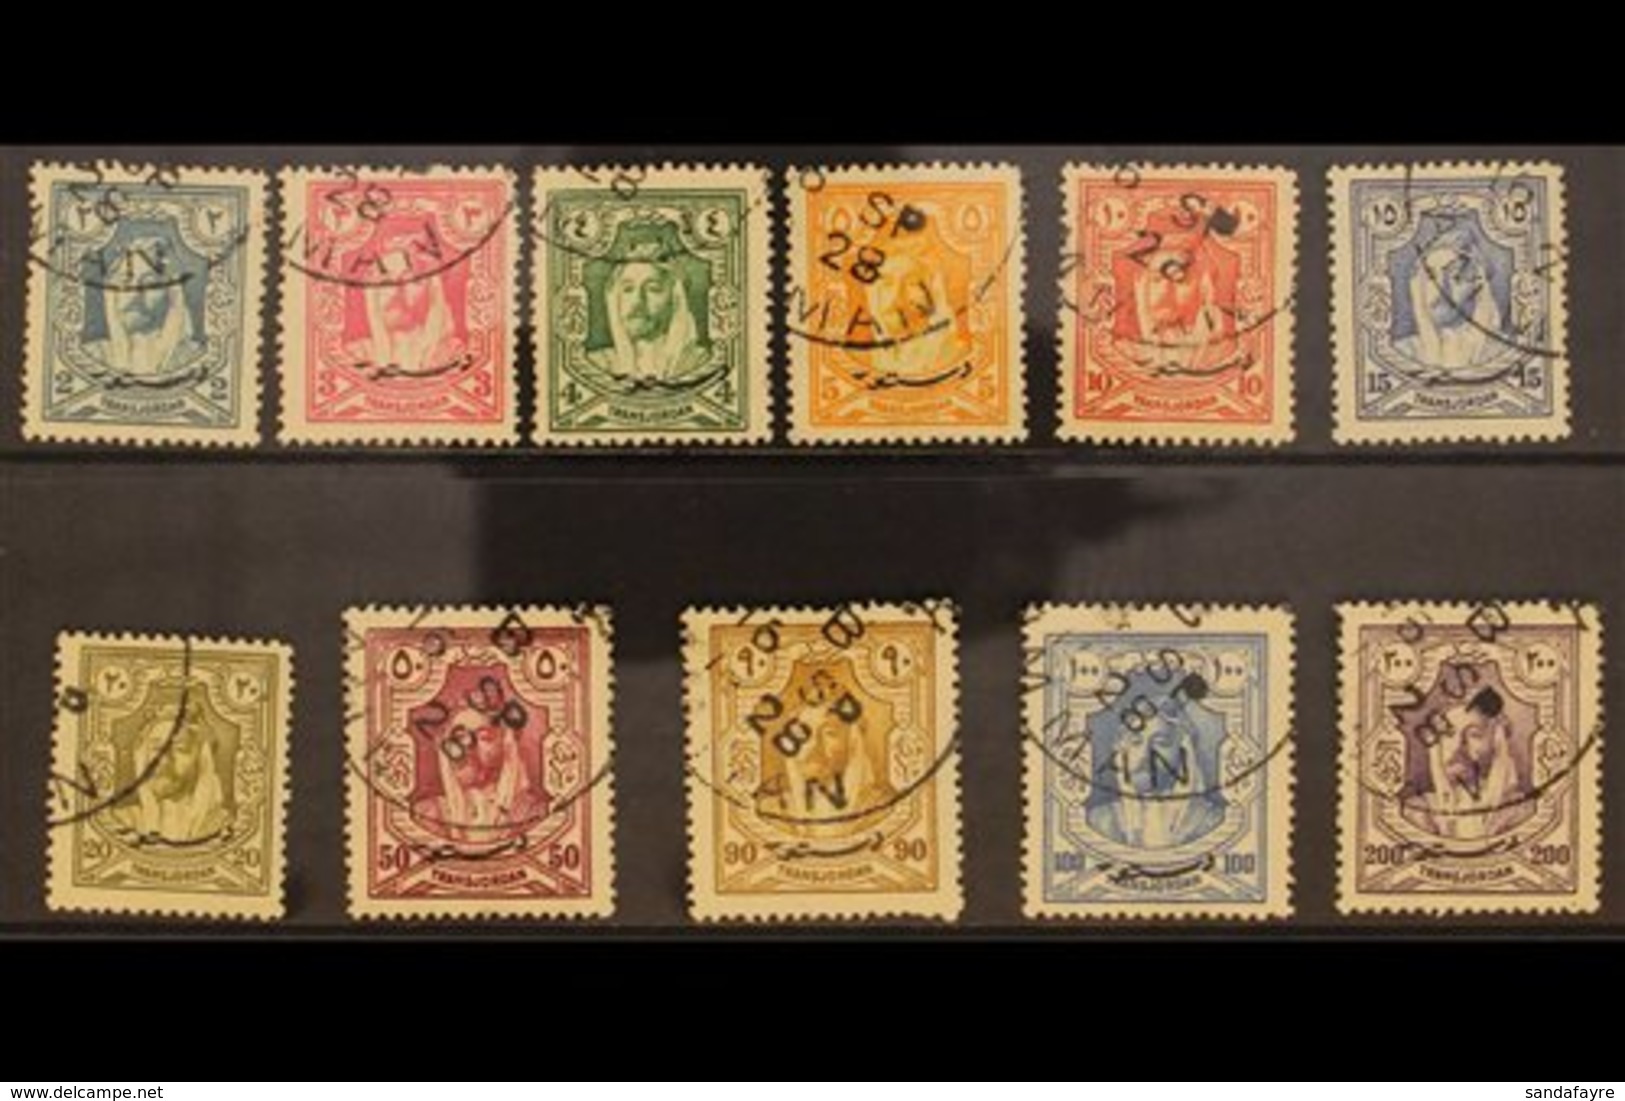 1928 New Constitution Set, SG 172/82, Fine Cds Used (11 Stamps) For More Images, Please Visit Http://www.sandafayre.com/ - Jordanien